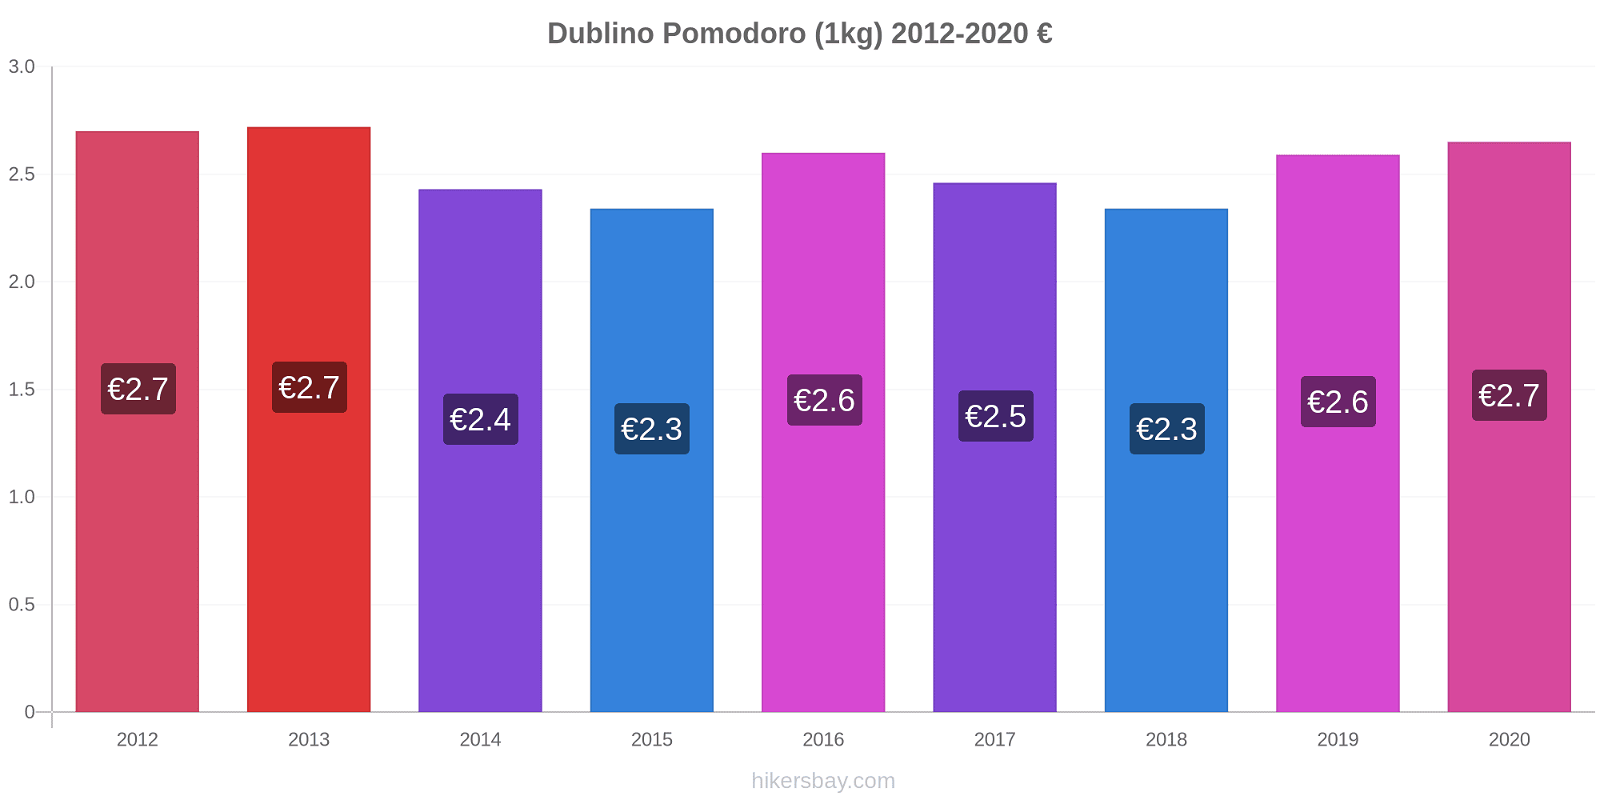 Dublino variazioni di prezzo Pomodoro (1kg) hikersbay.com